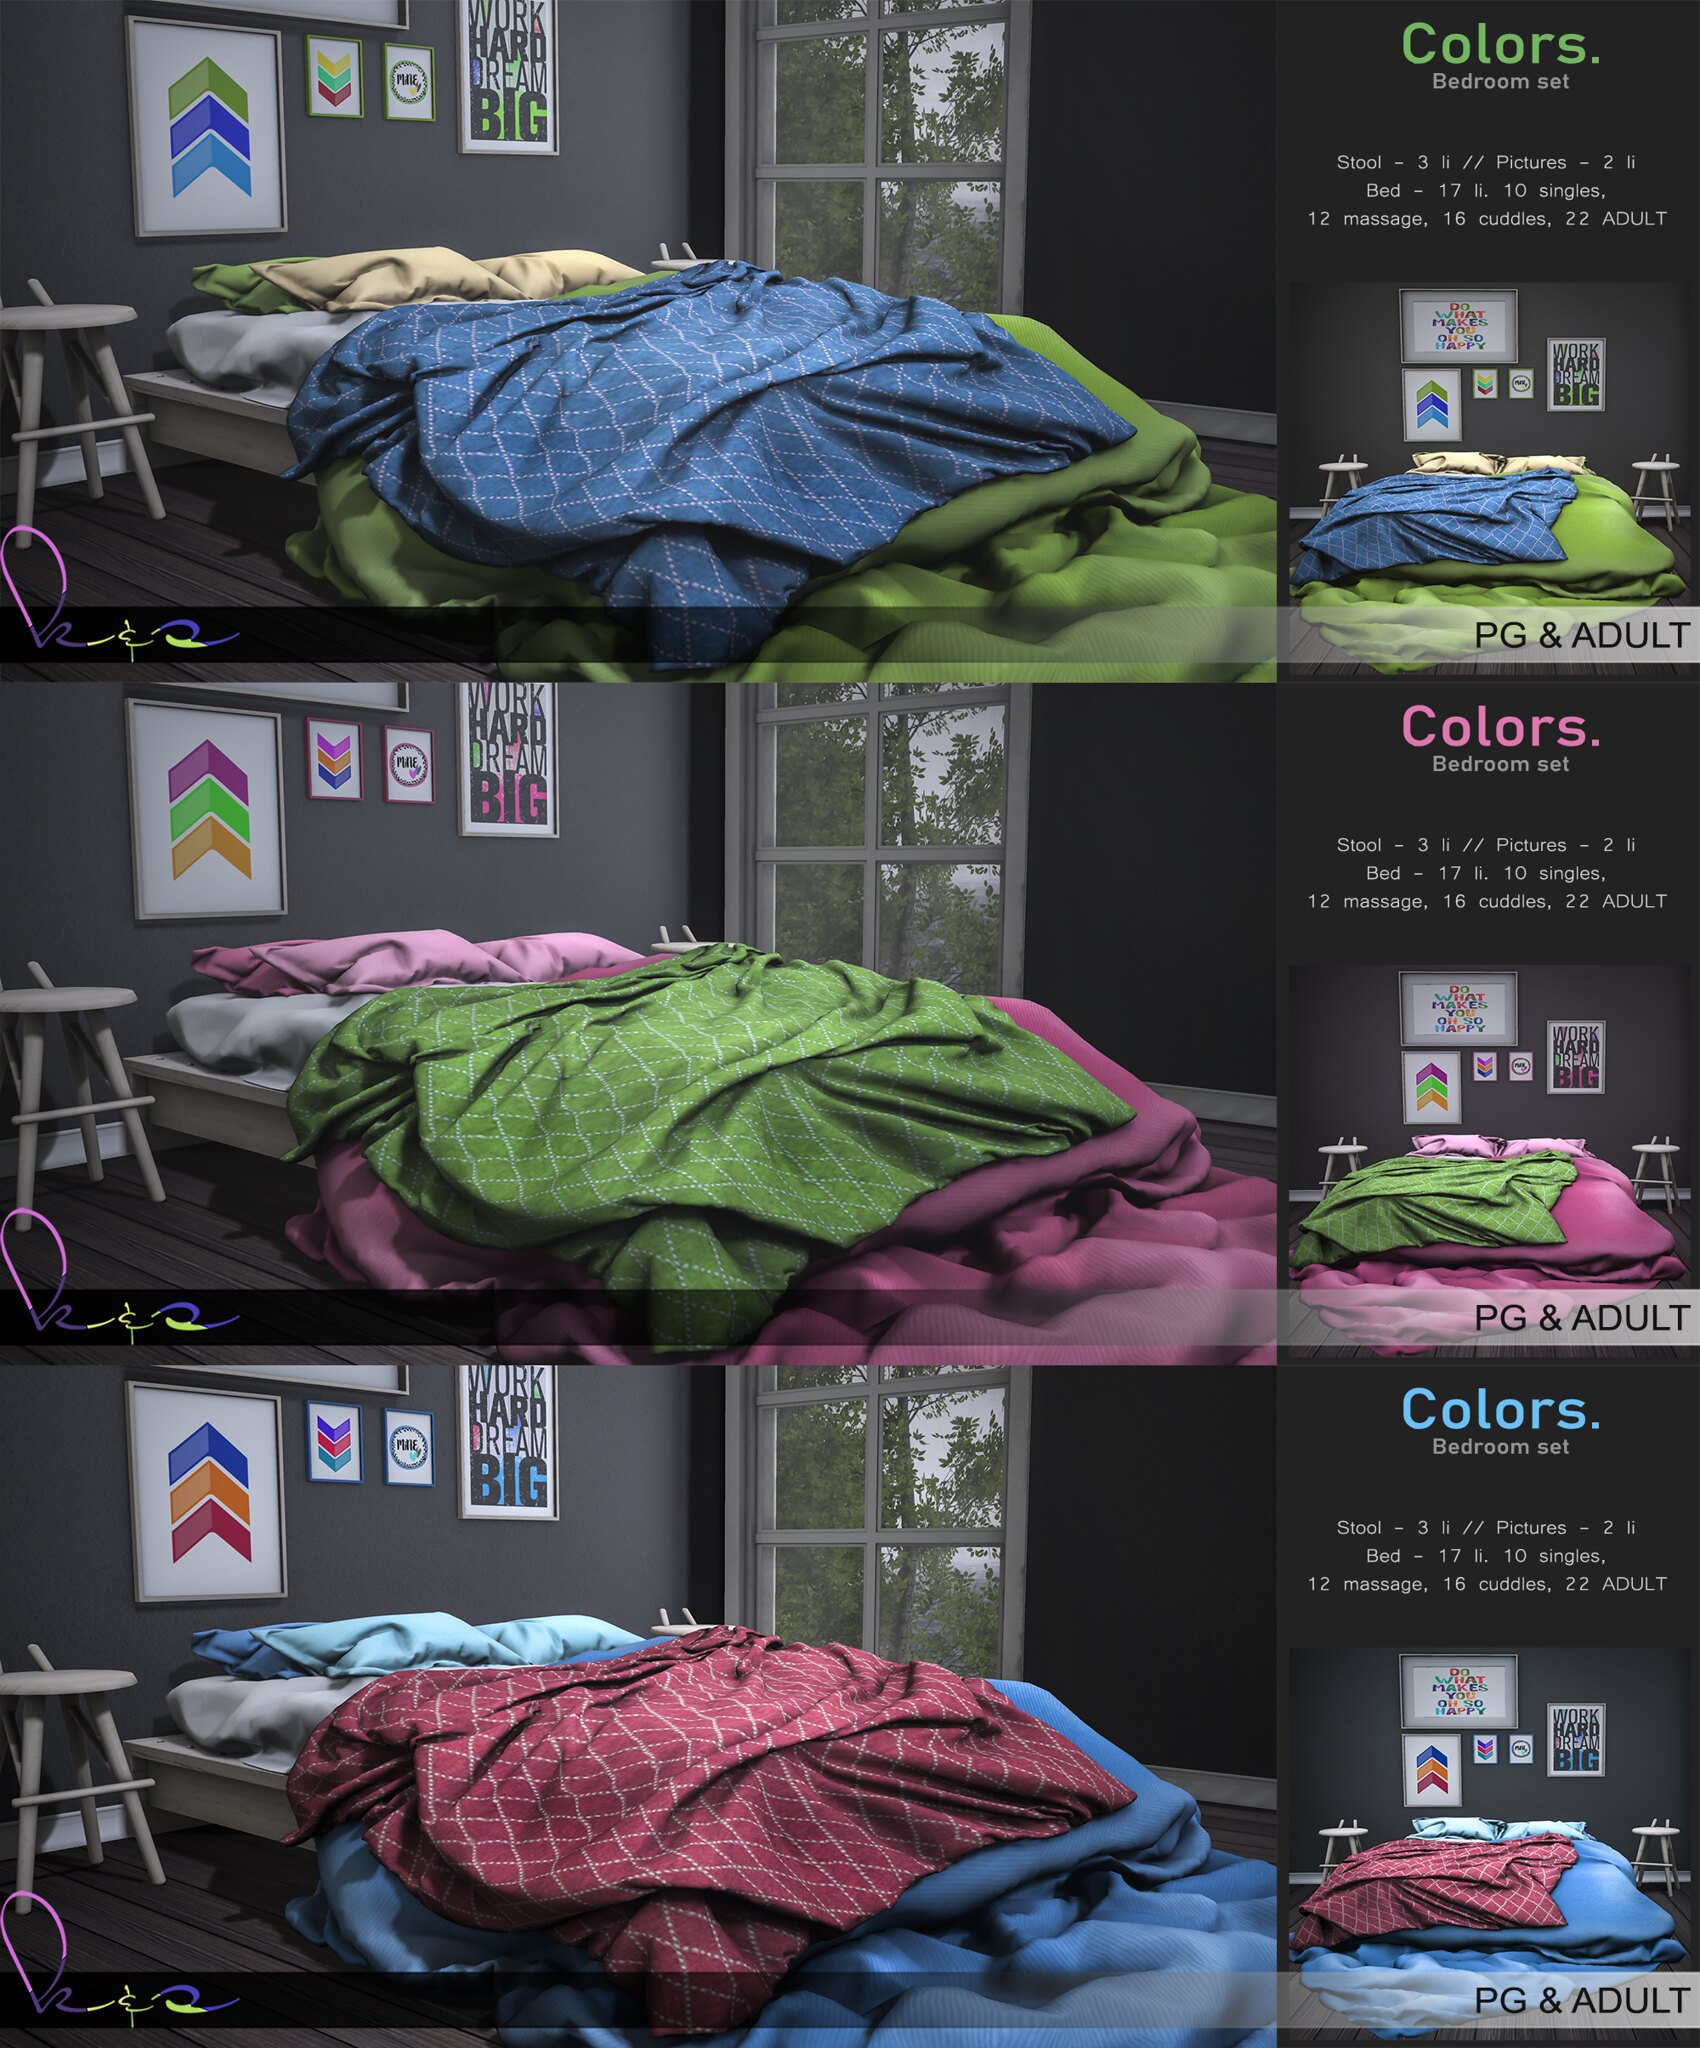 K&S – Color Bedroom